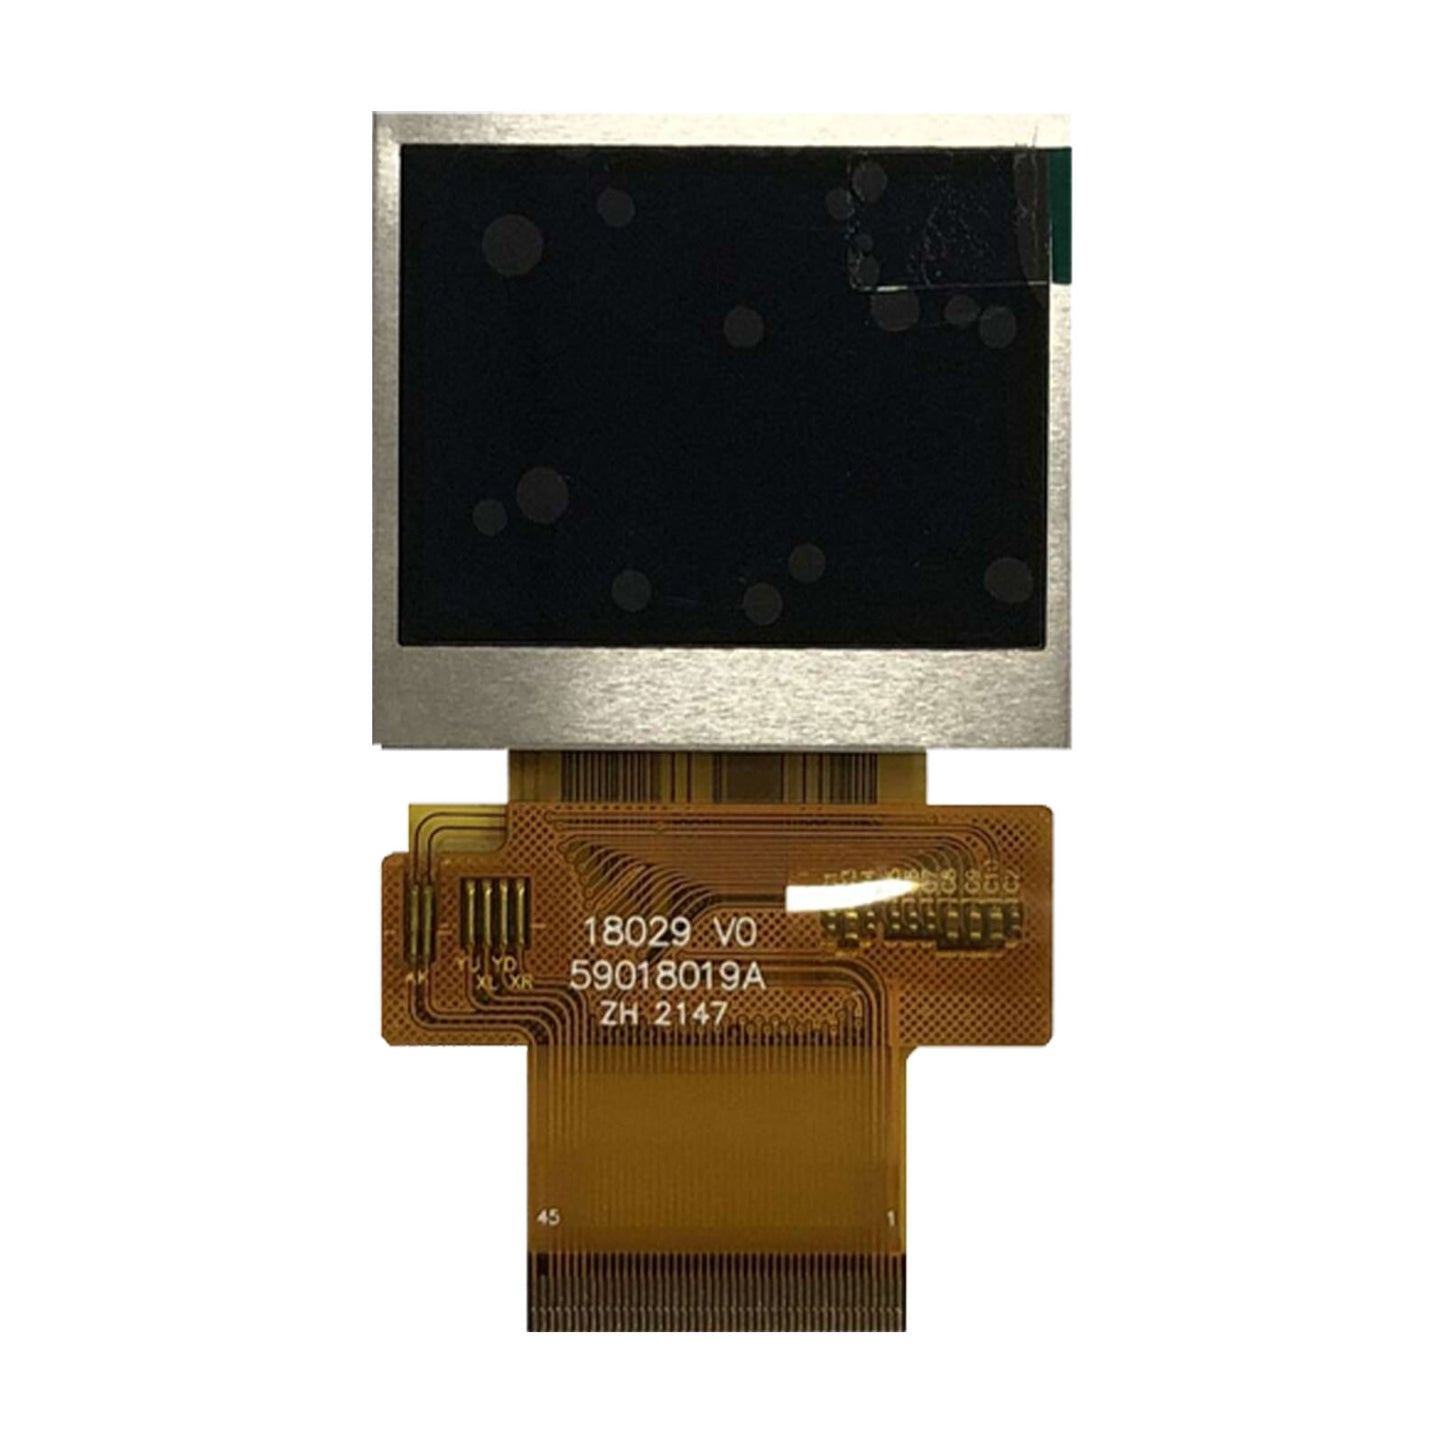 DisplayModule 1.75" 296x220 Transflective Display Panel - MCU